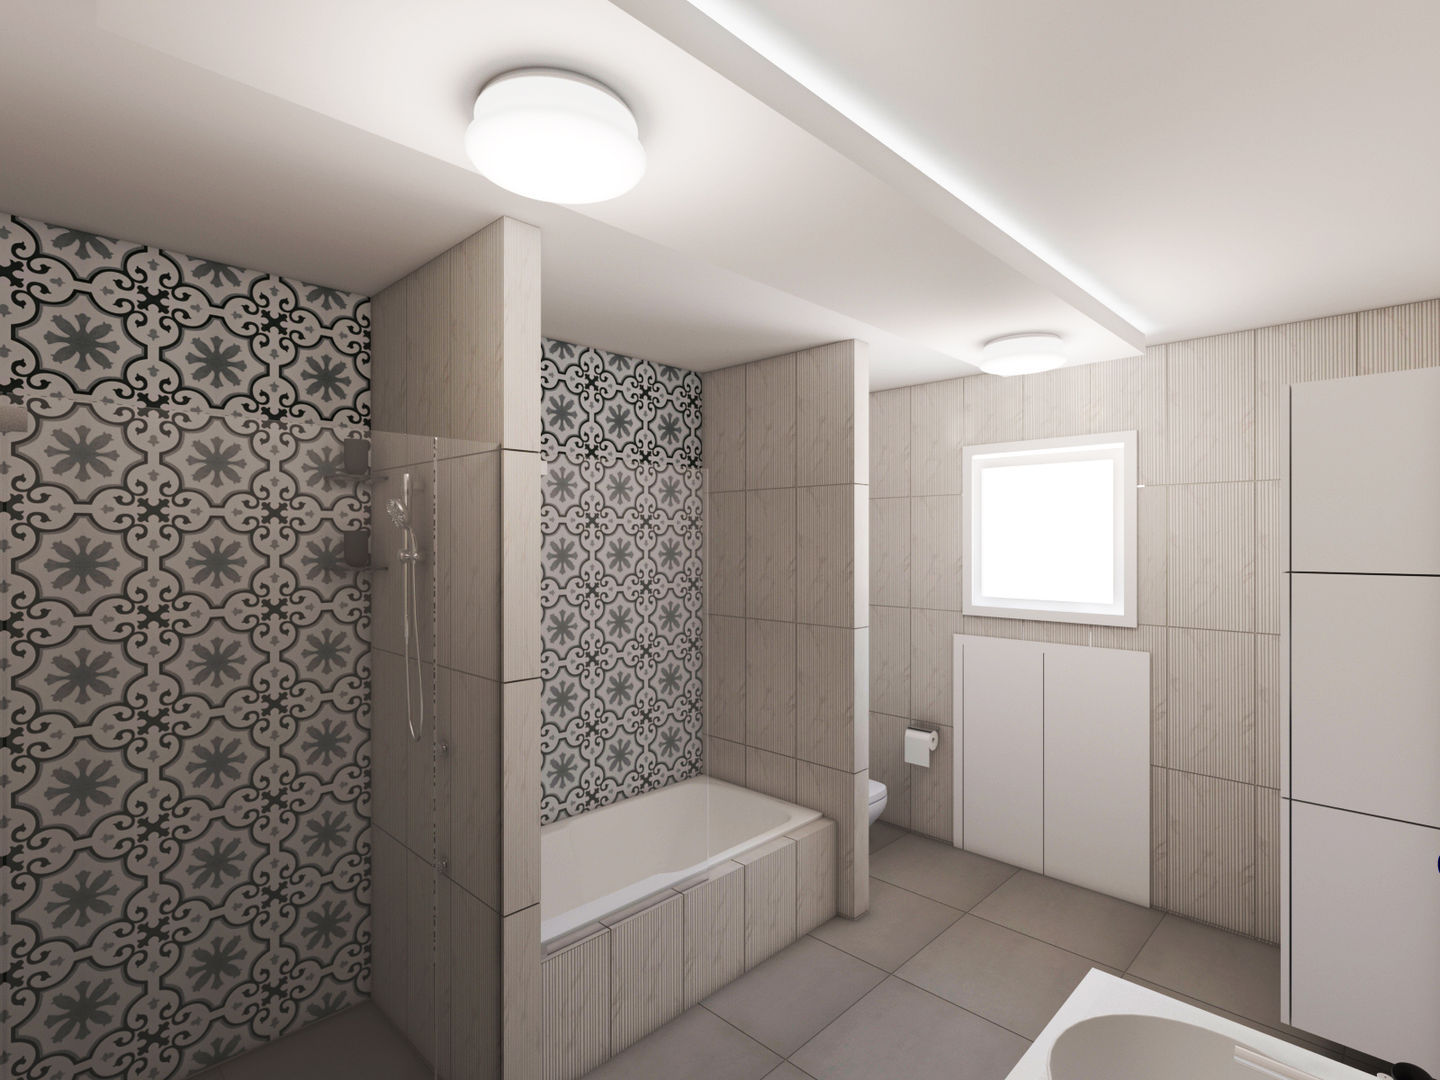 Banyo Tadilat Tasarımı, Sanal Mimarlık Hizmetleri Sanal Mimarlık Hizmetleri حمام